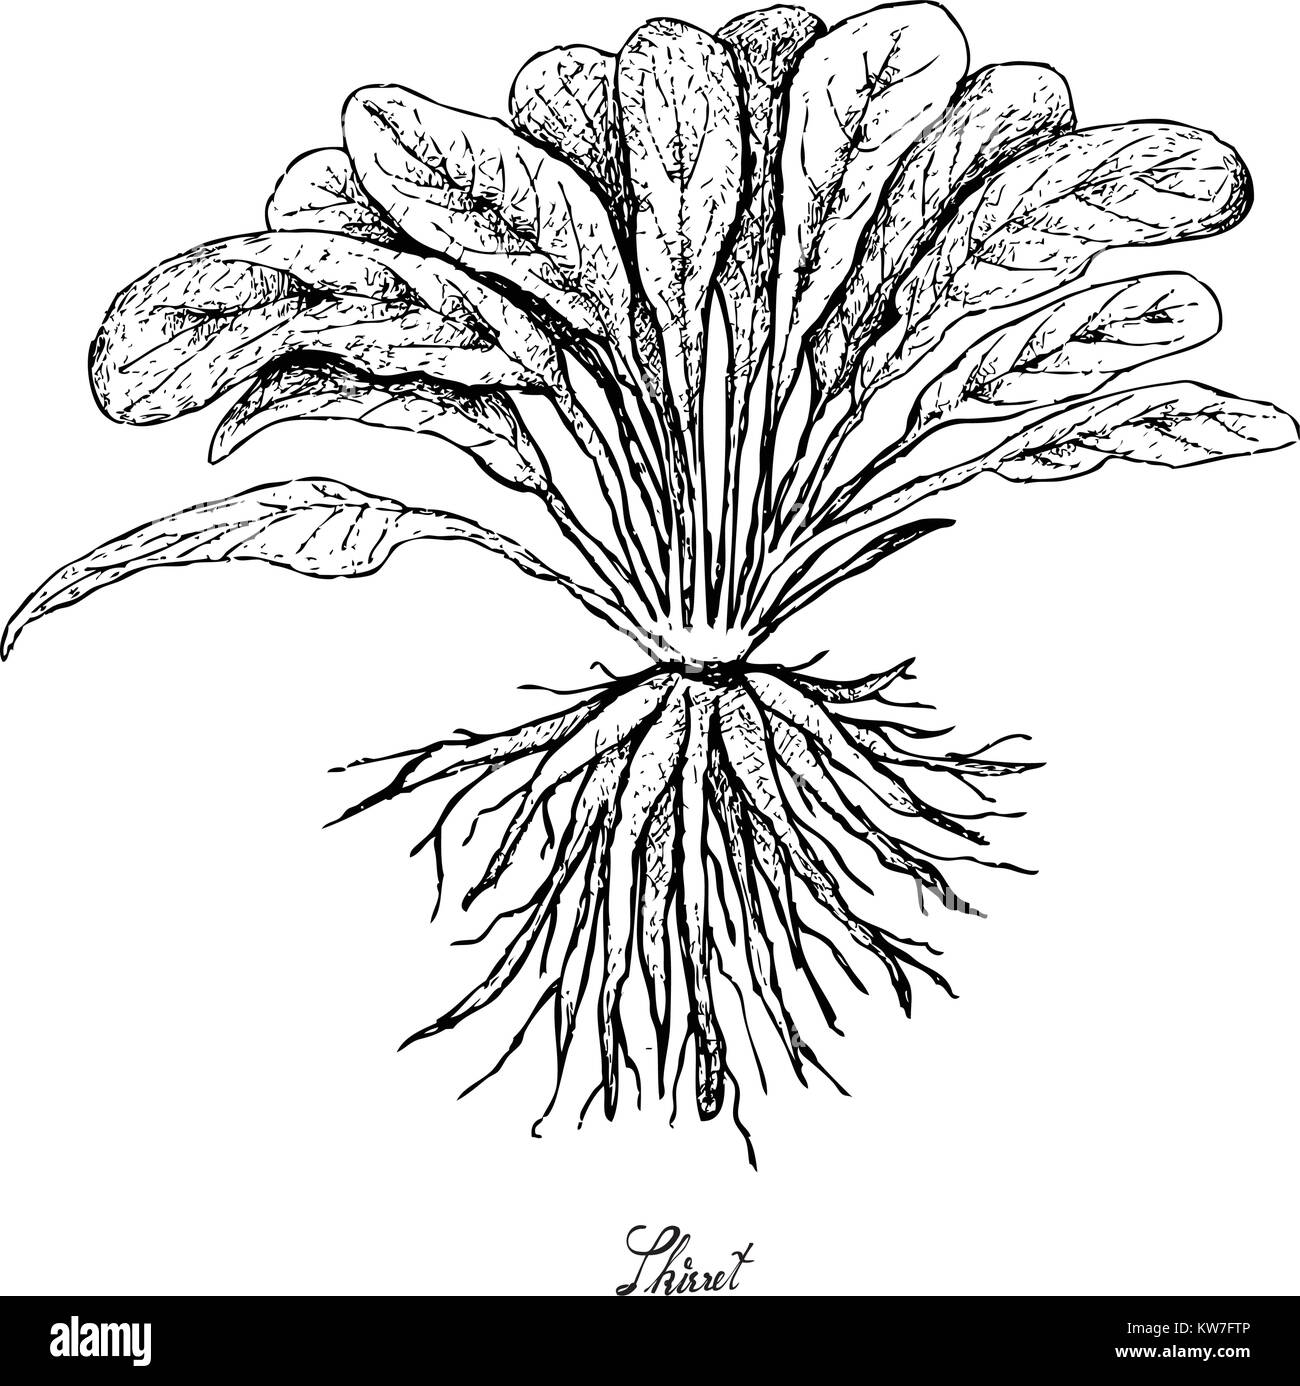 Root und knötchenförmige Gemüse, Illustration Hand gezeichnete Skizze von frischem Skirret oder Sium Sisarum Pflanze isoliert auf weißem Hintergrund. Stock Vektor